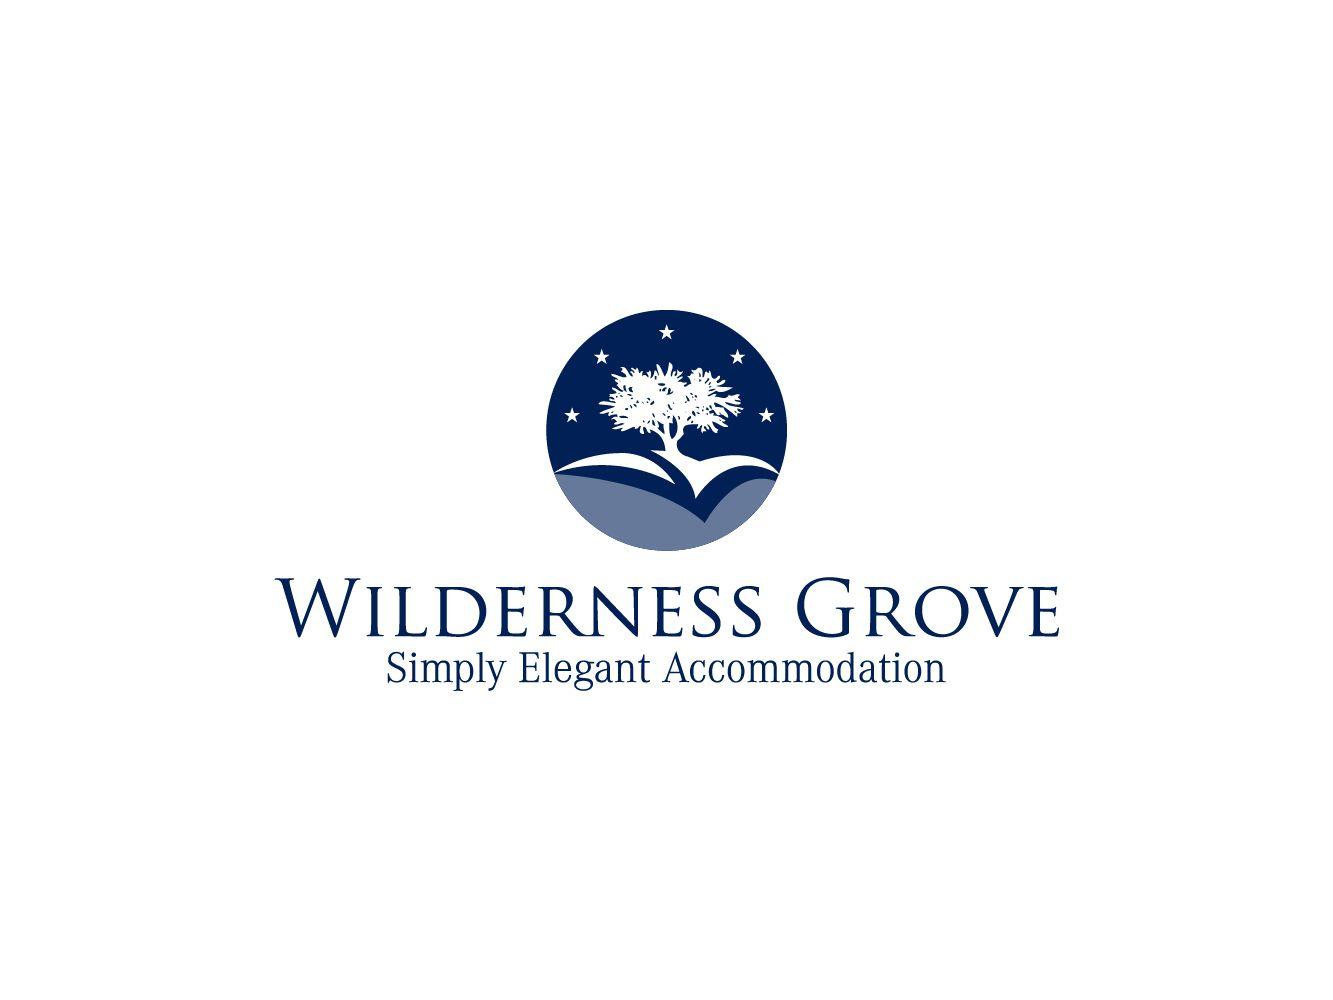 Grove Logo - DesignContest - Wilderness Grove Logo wilderness-grove-logo